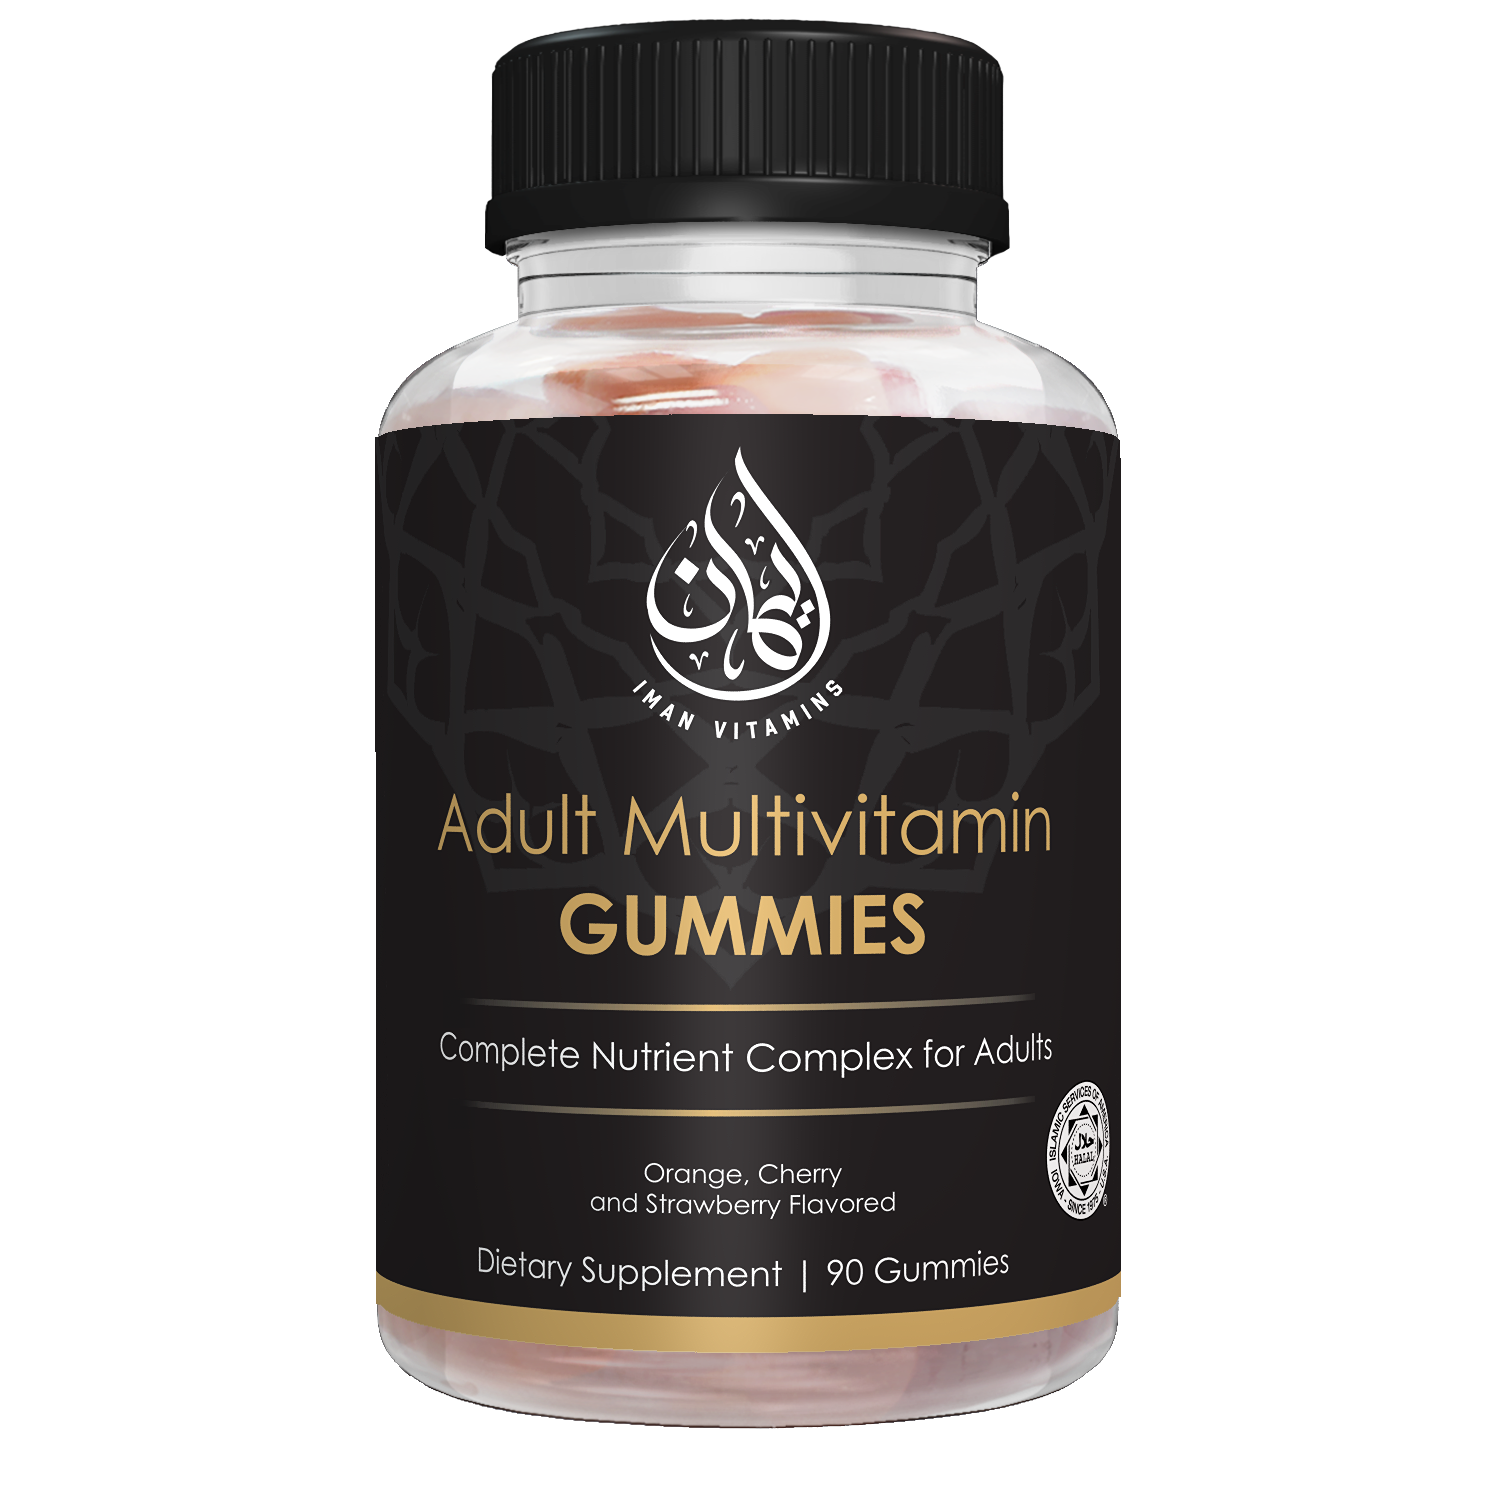 Halal Adult Multivitamin Gummies - Iman Vitamins